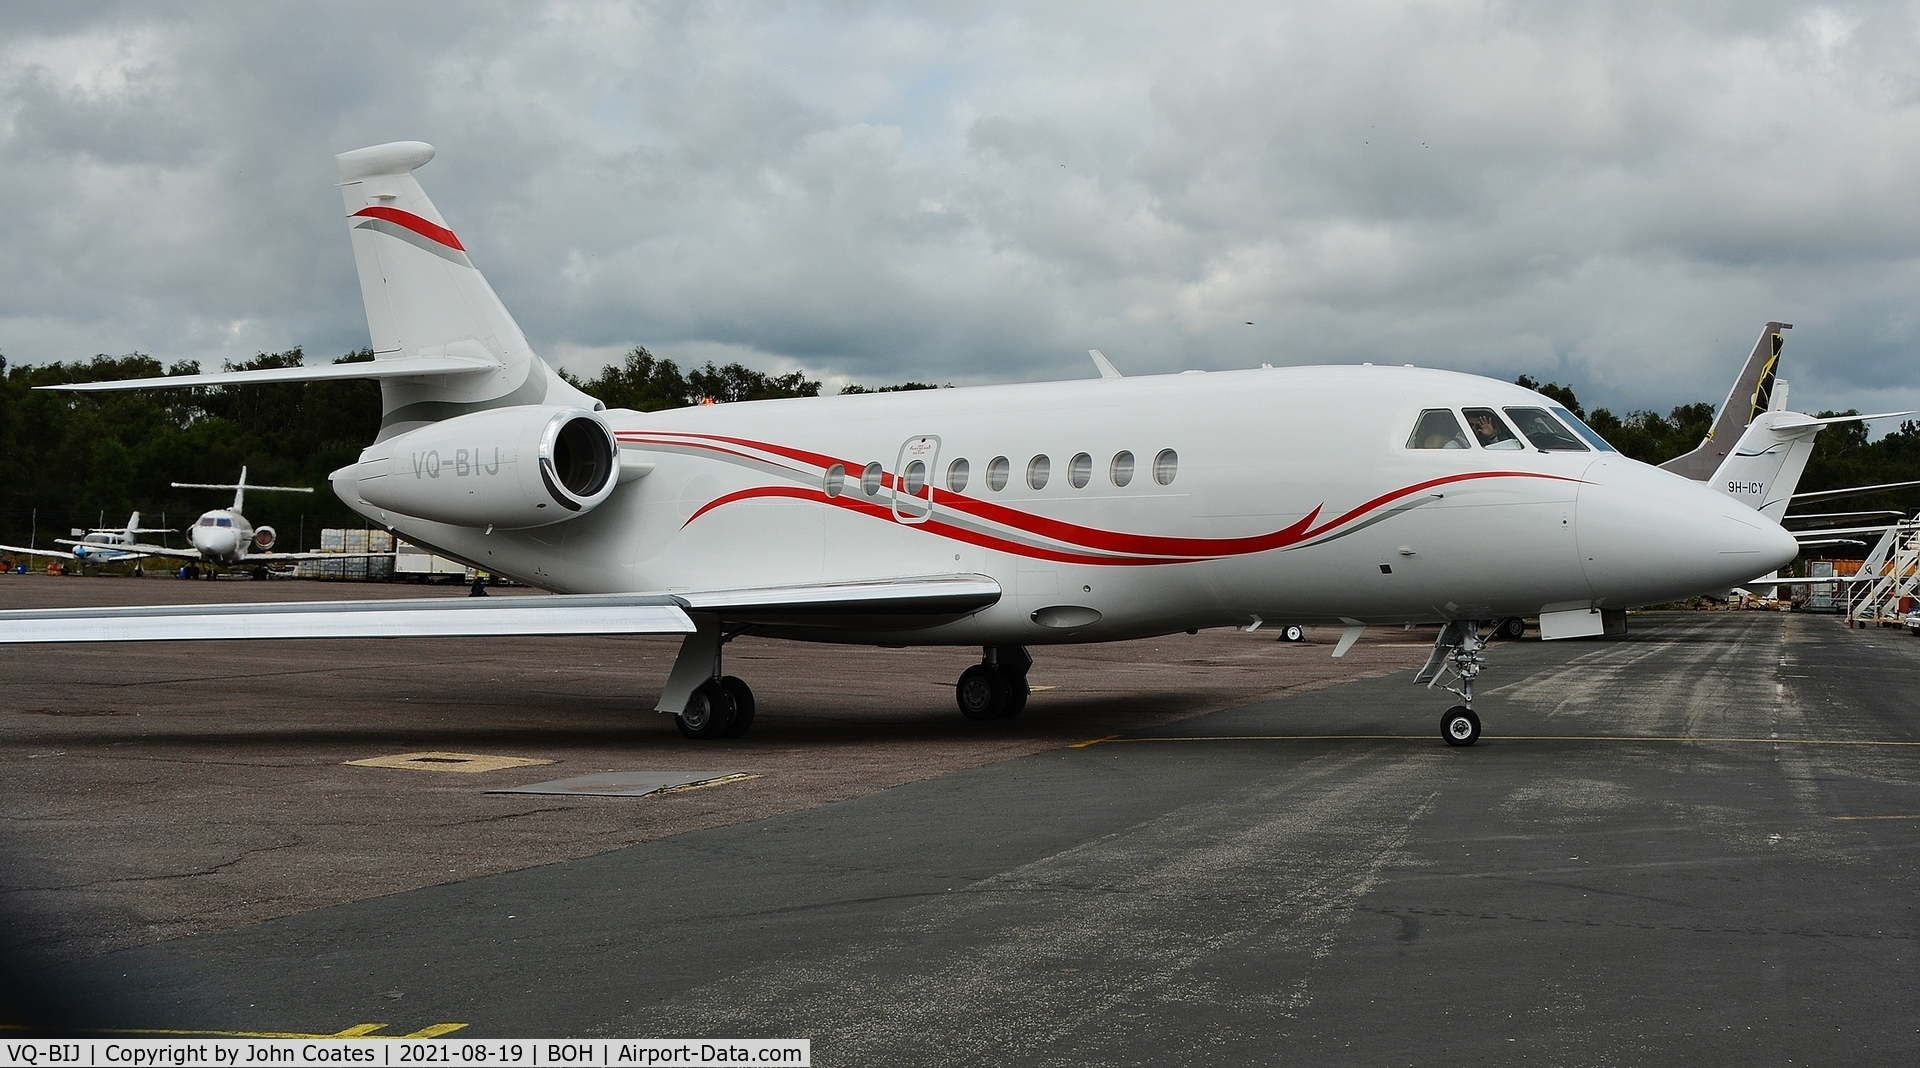 VQ-BIJ, 2010 Dassault Falcon 2000LX C/N 214, Taxiing to depart